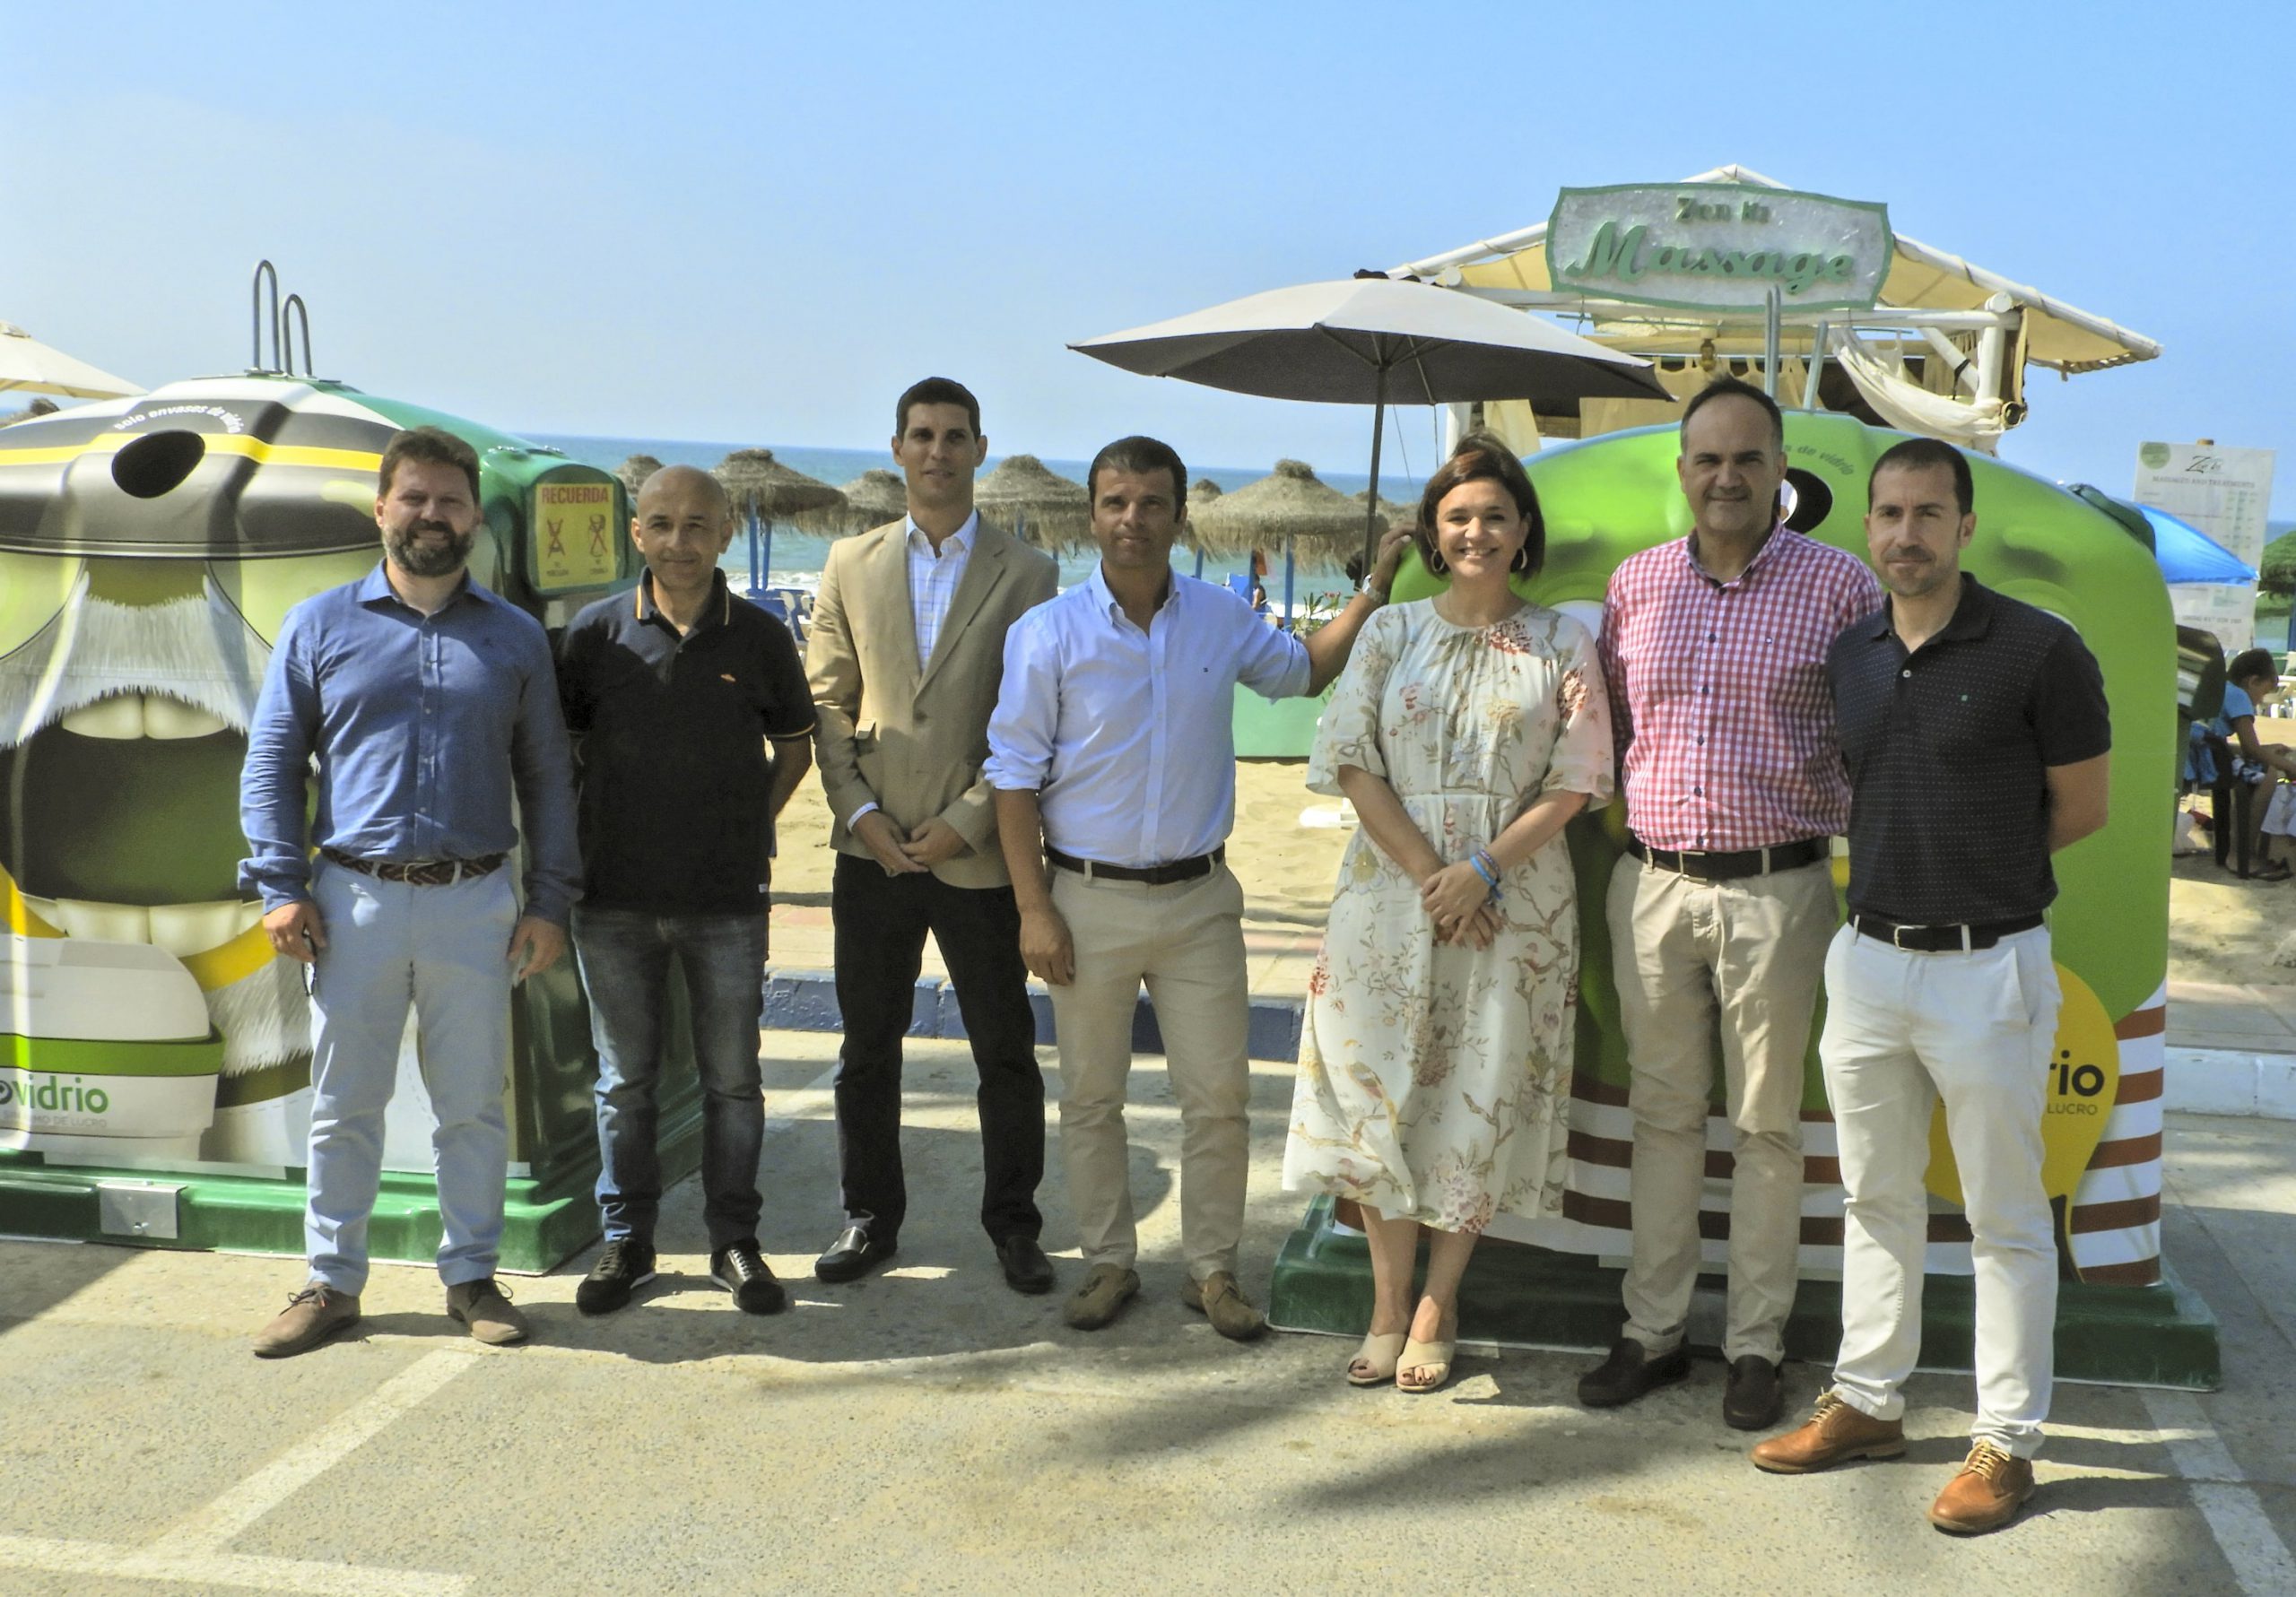 La Mancomunidad lidera en Andalucía la campaña de reciclaje “Movimiento Banderas Verdes por la sostenibilidad”